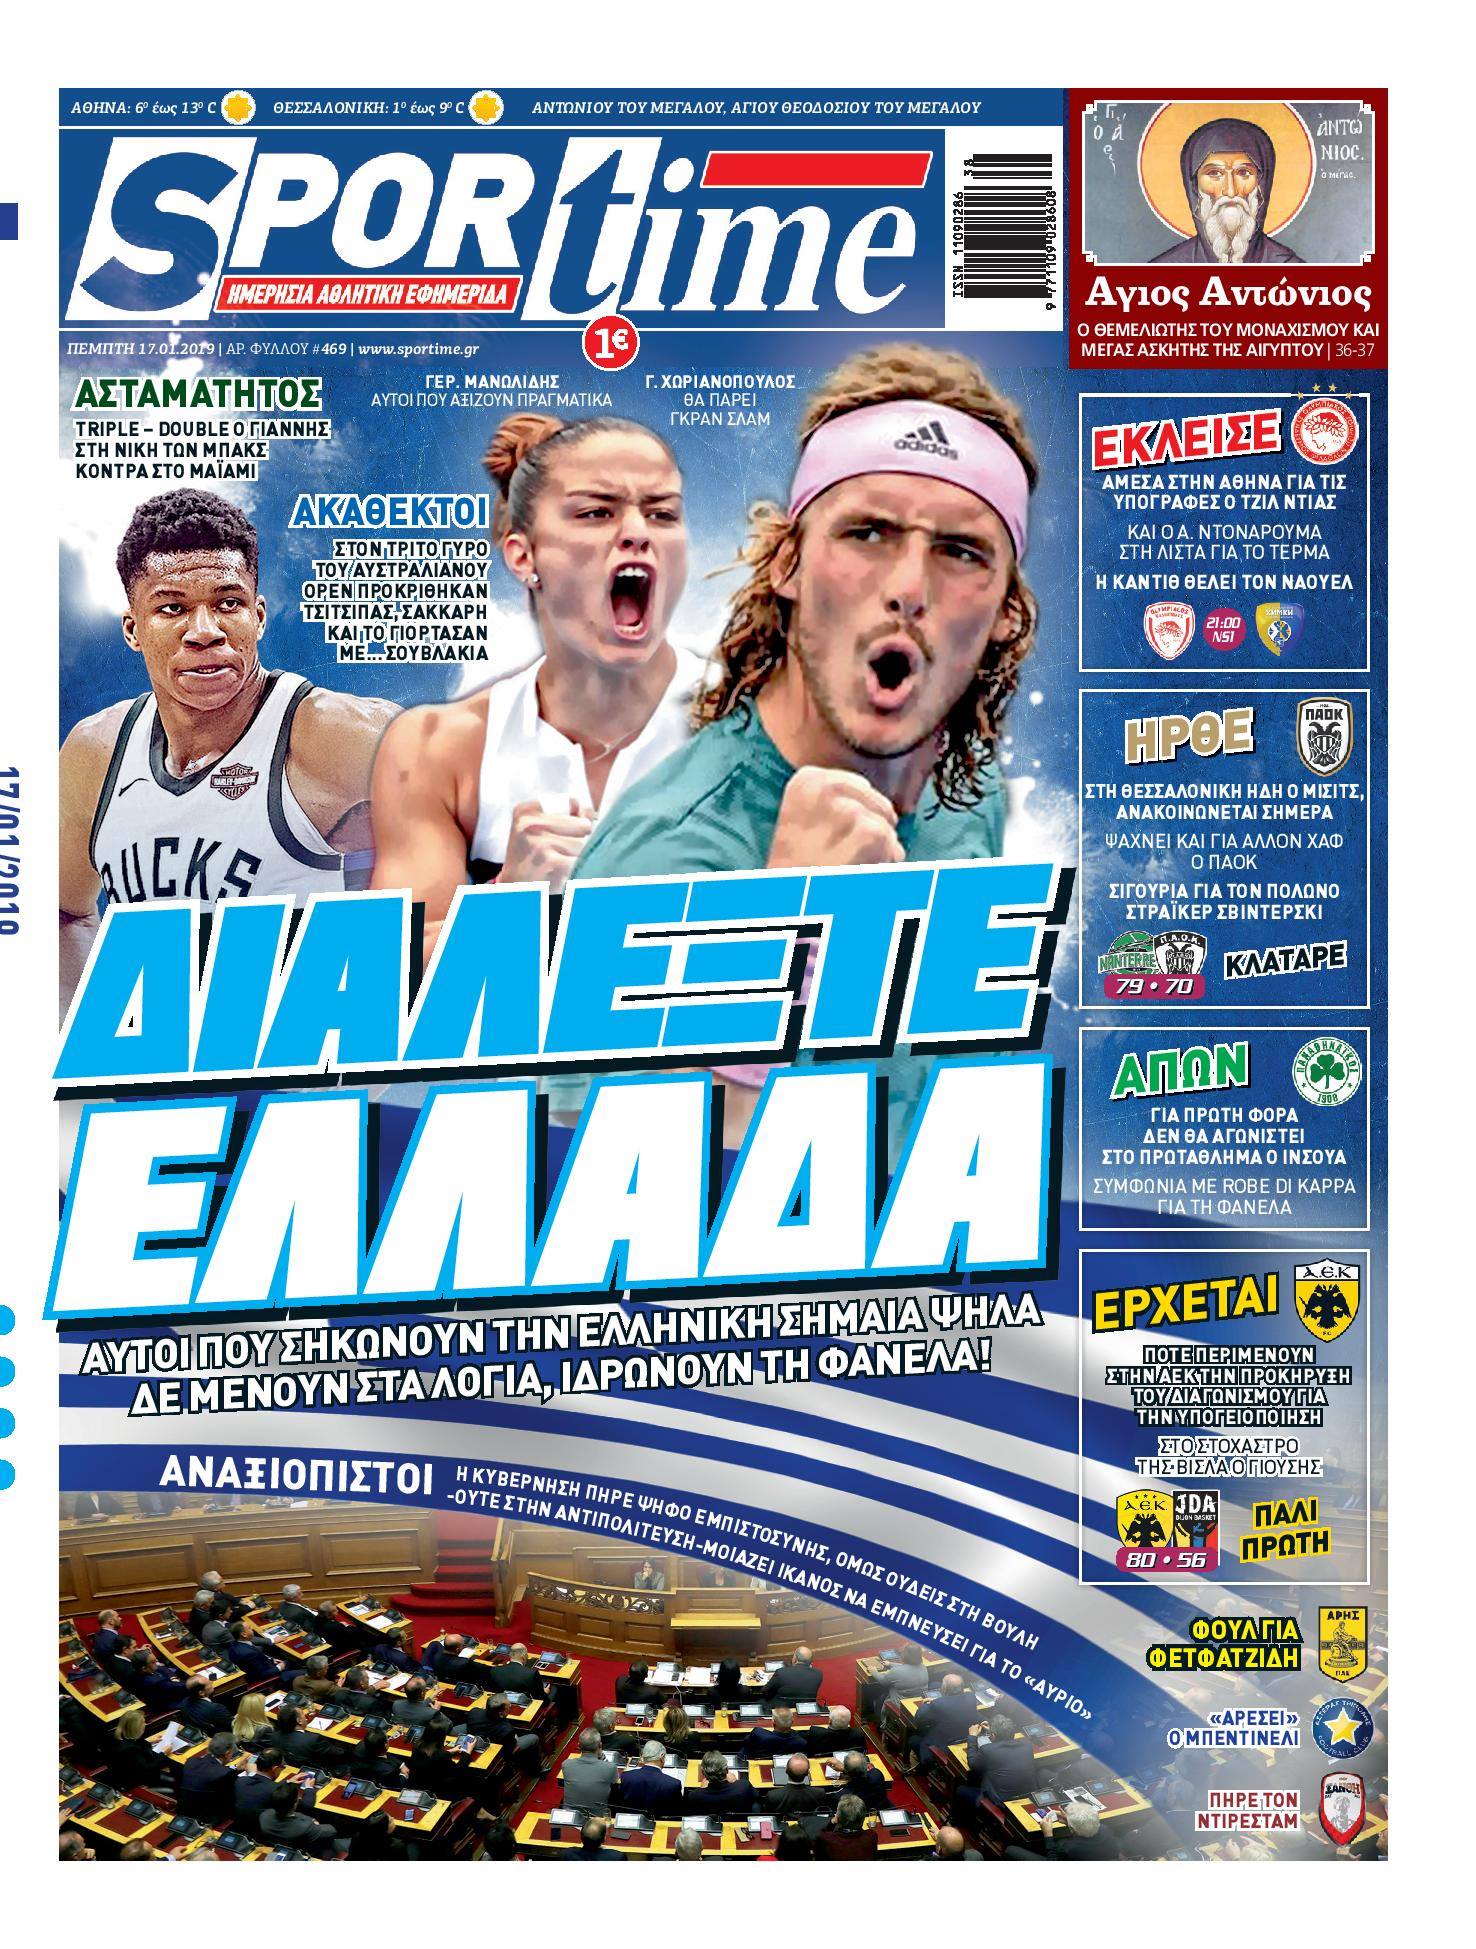 Διαβάστε σήμερα στο Sportime: «Διαλέξτε Ελλάδα»